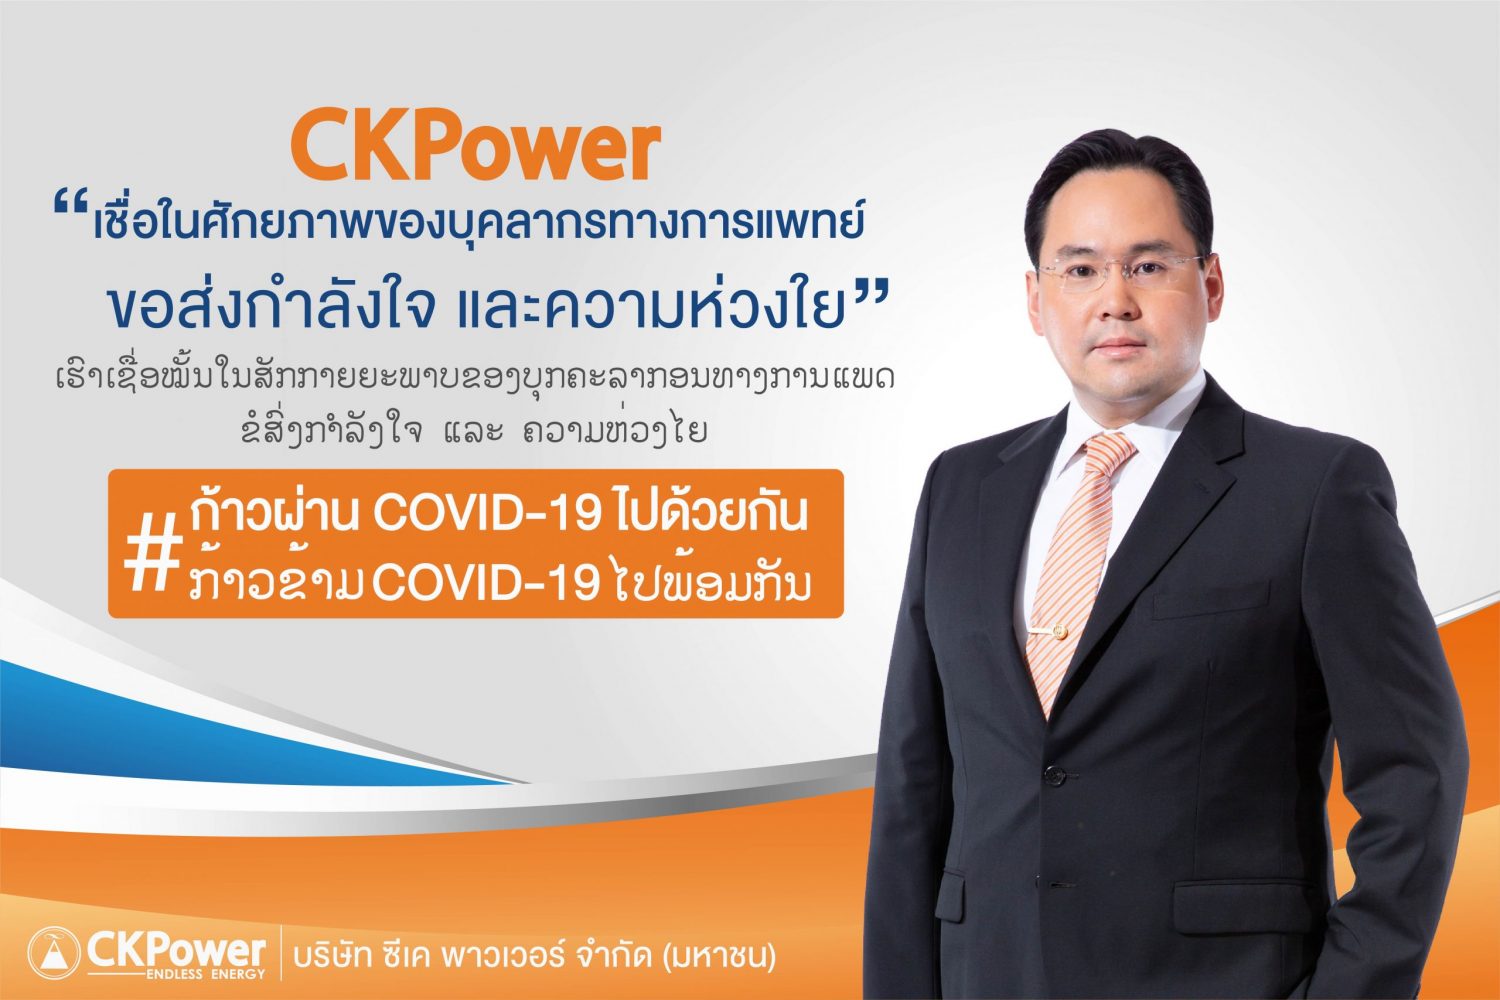 กลุ่ม CKPower มอบเงินแก่มูลนิธิรามาธิบดีฯ และสปป.ลาว รับมือการแพร่ระบาด COVID-19